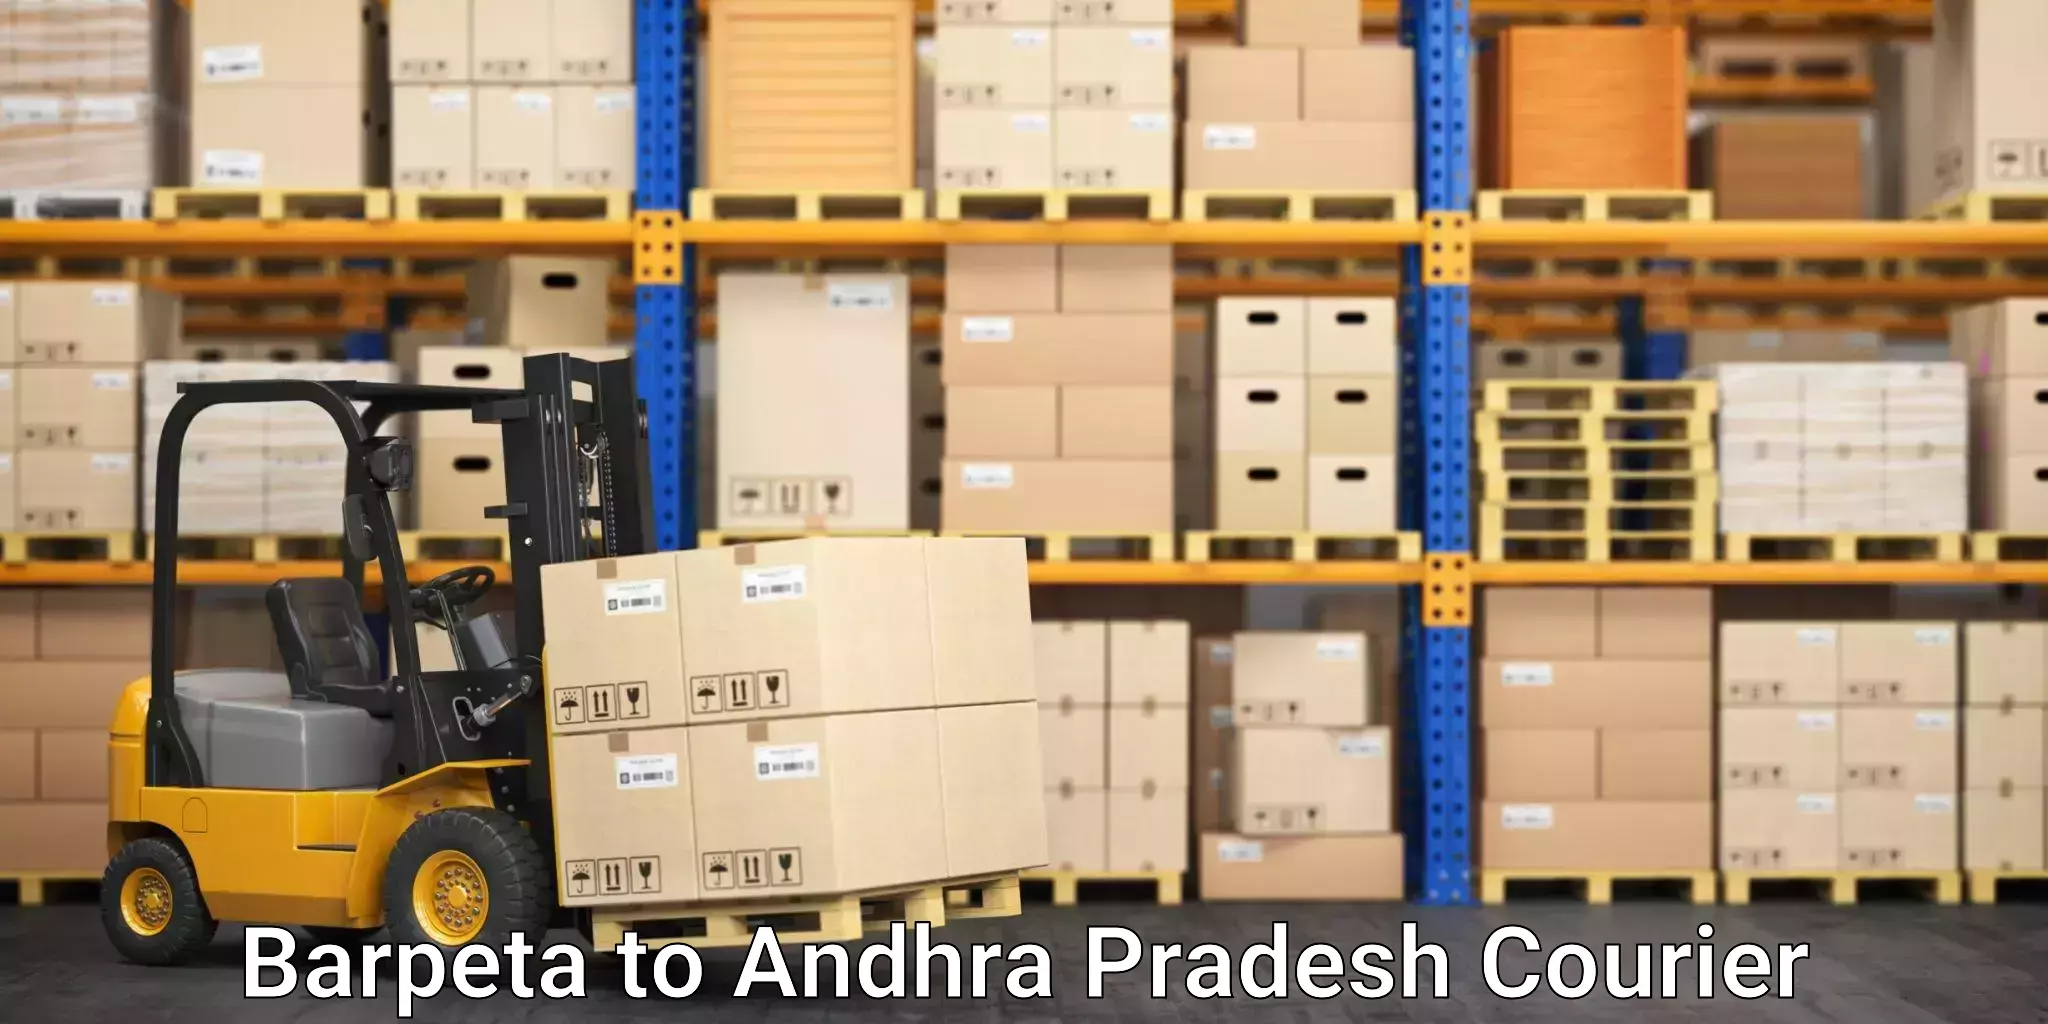 International courier networks Barpeta to Andhra Pradesh